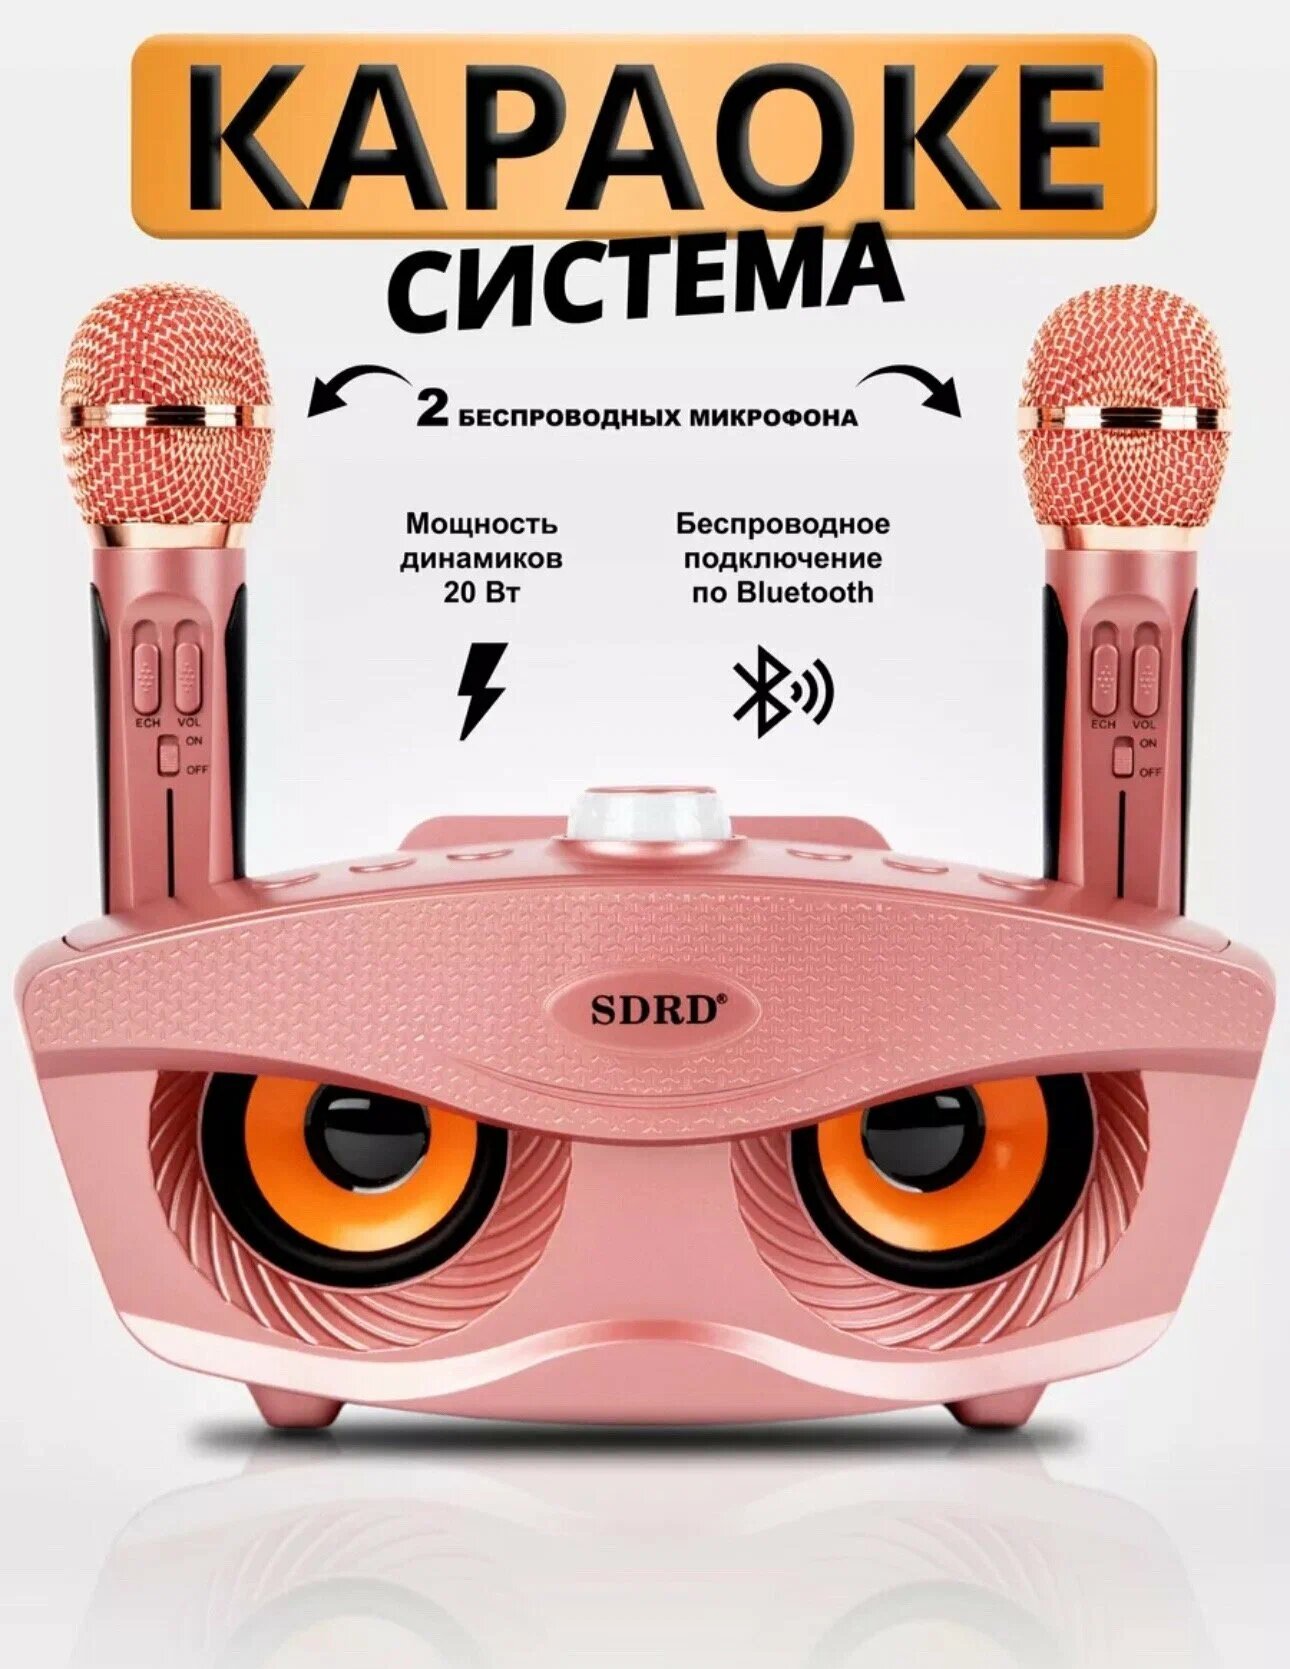 Караоке-система SDRD с двумя микрофонами для дома, розовая